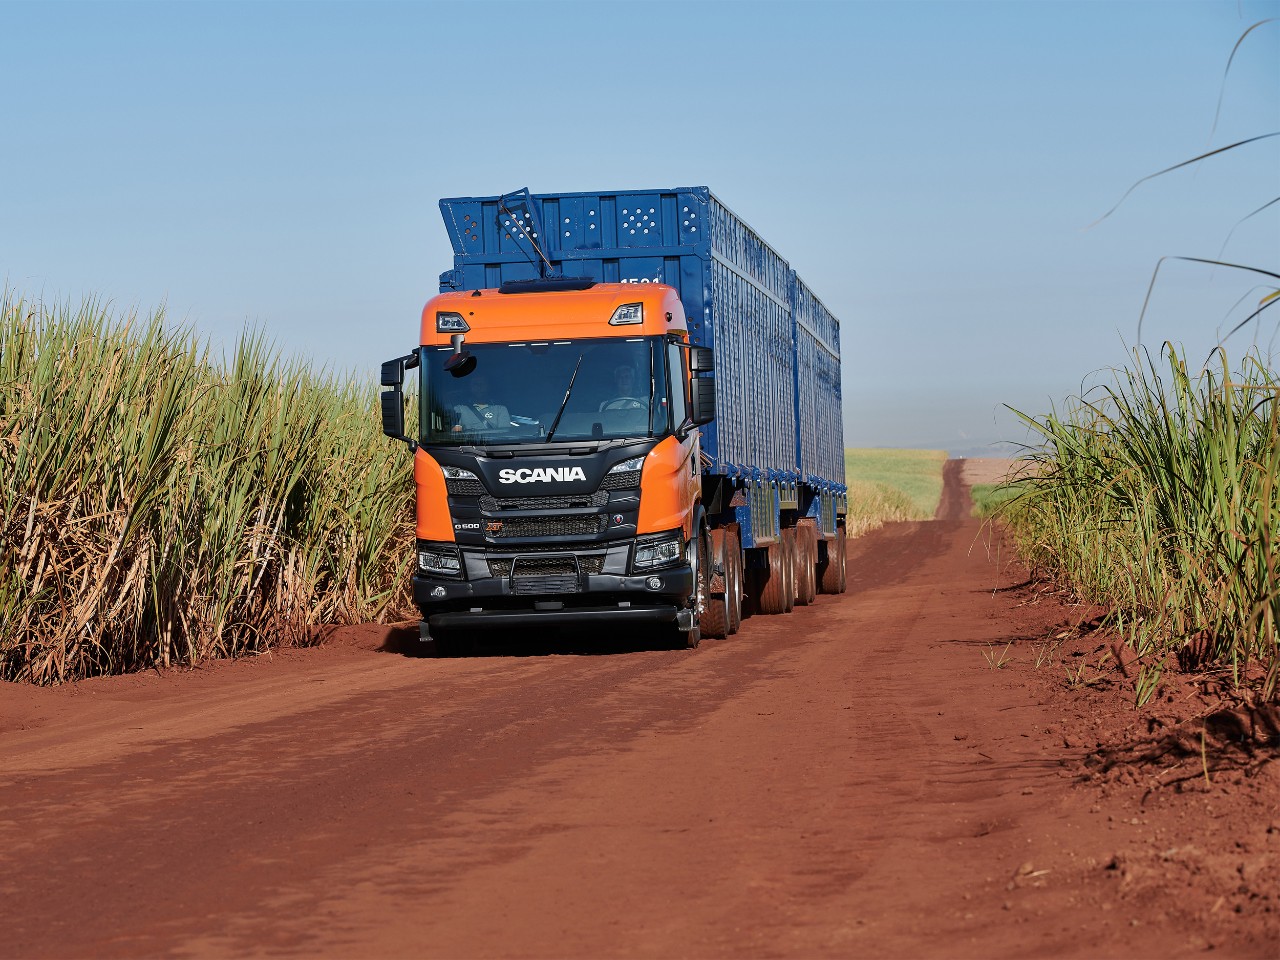  truck for sugarcane transport